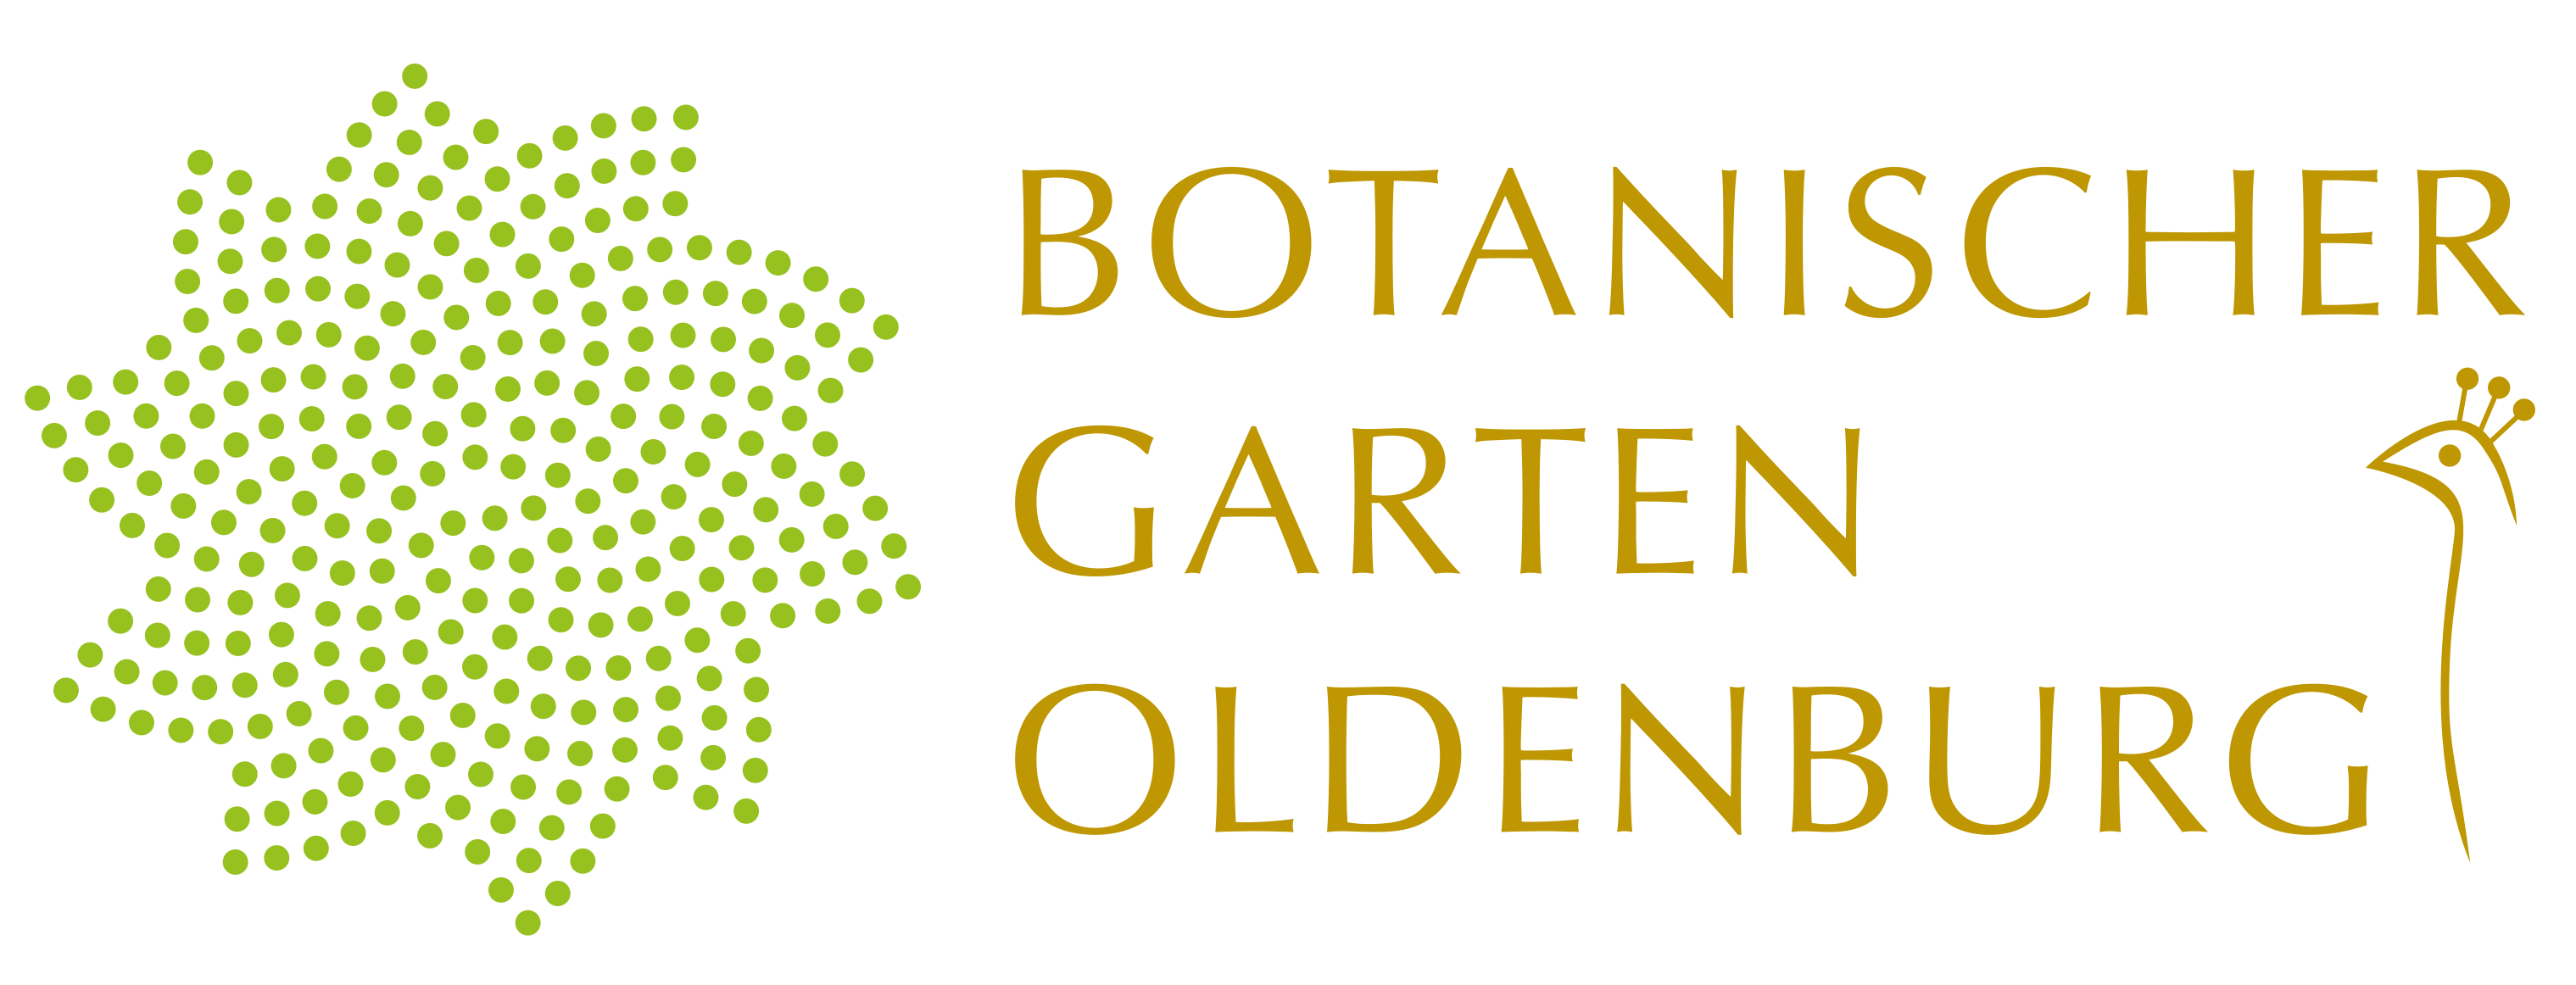 Botanischer Garten Oldenburg